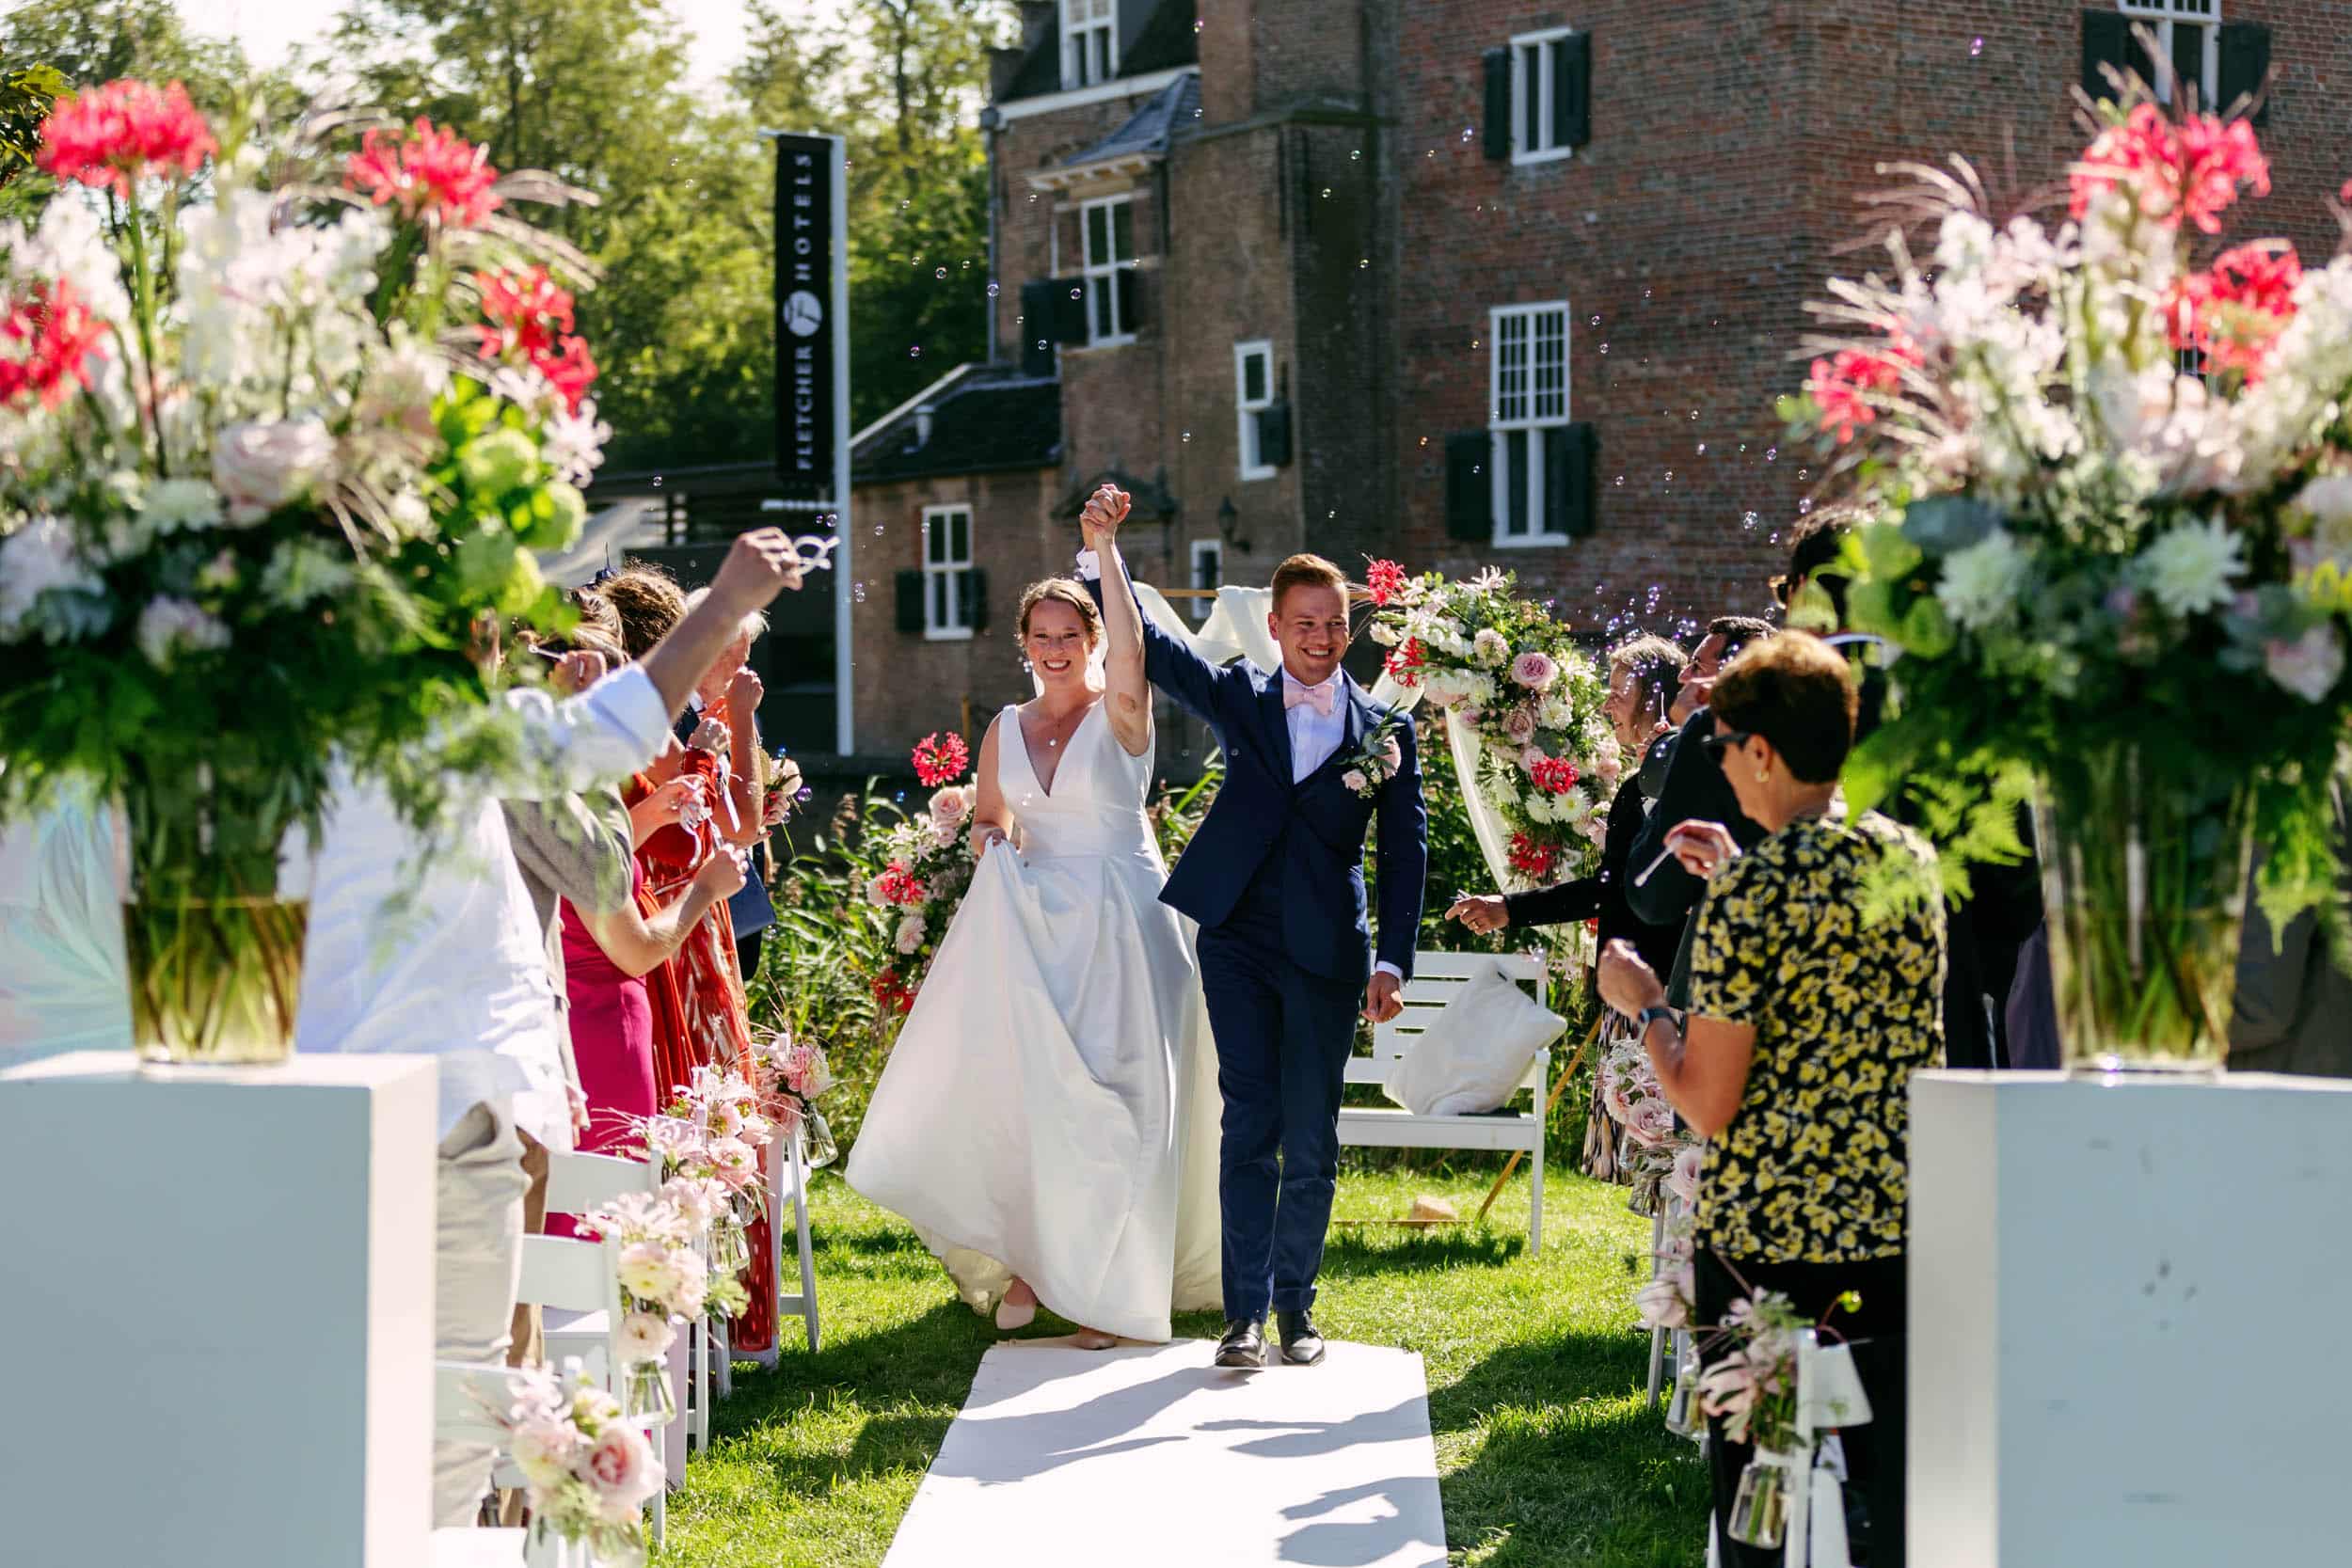 De perfecte bruiloft vastgelegd door een trouwfotograaf met een prachtige Trouwfoto van het bruidspaar dat door het gangpad loopt.